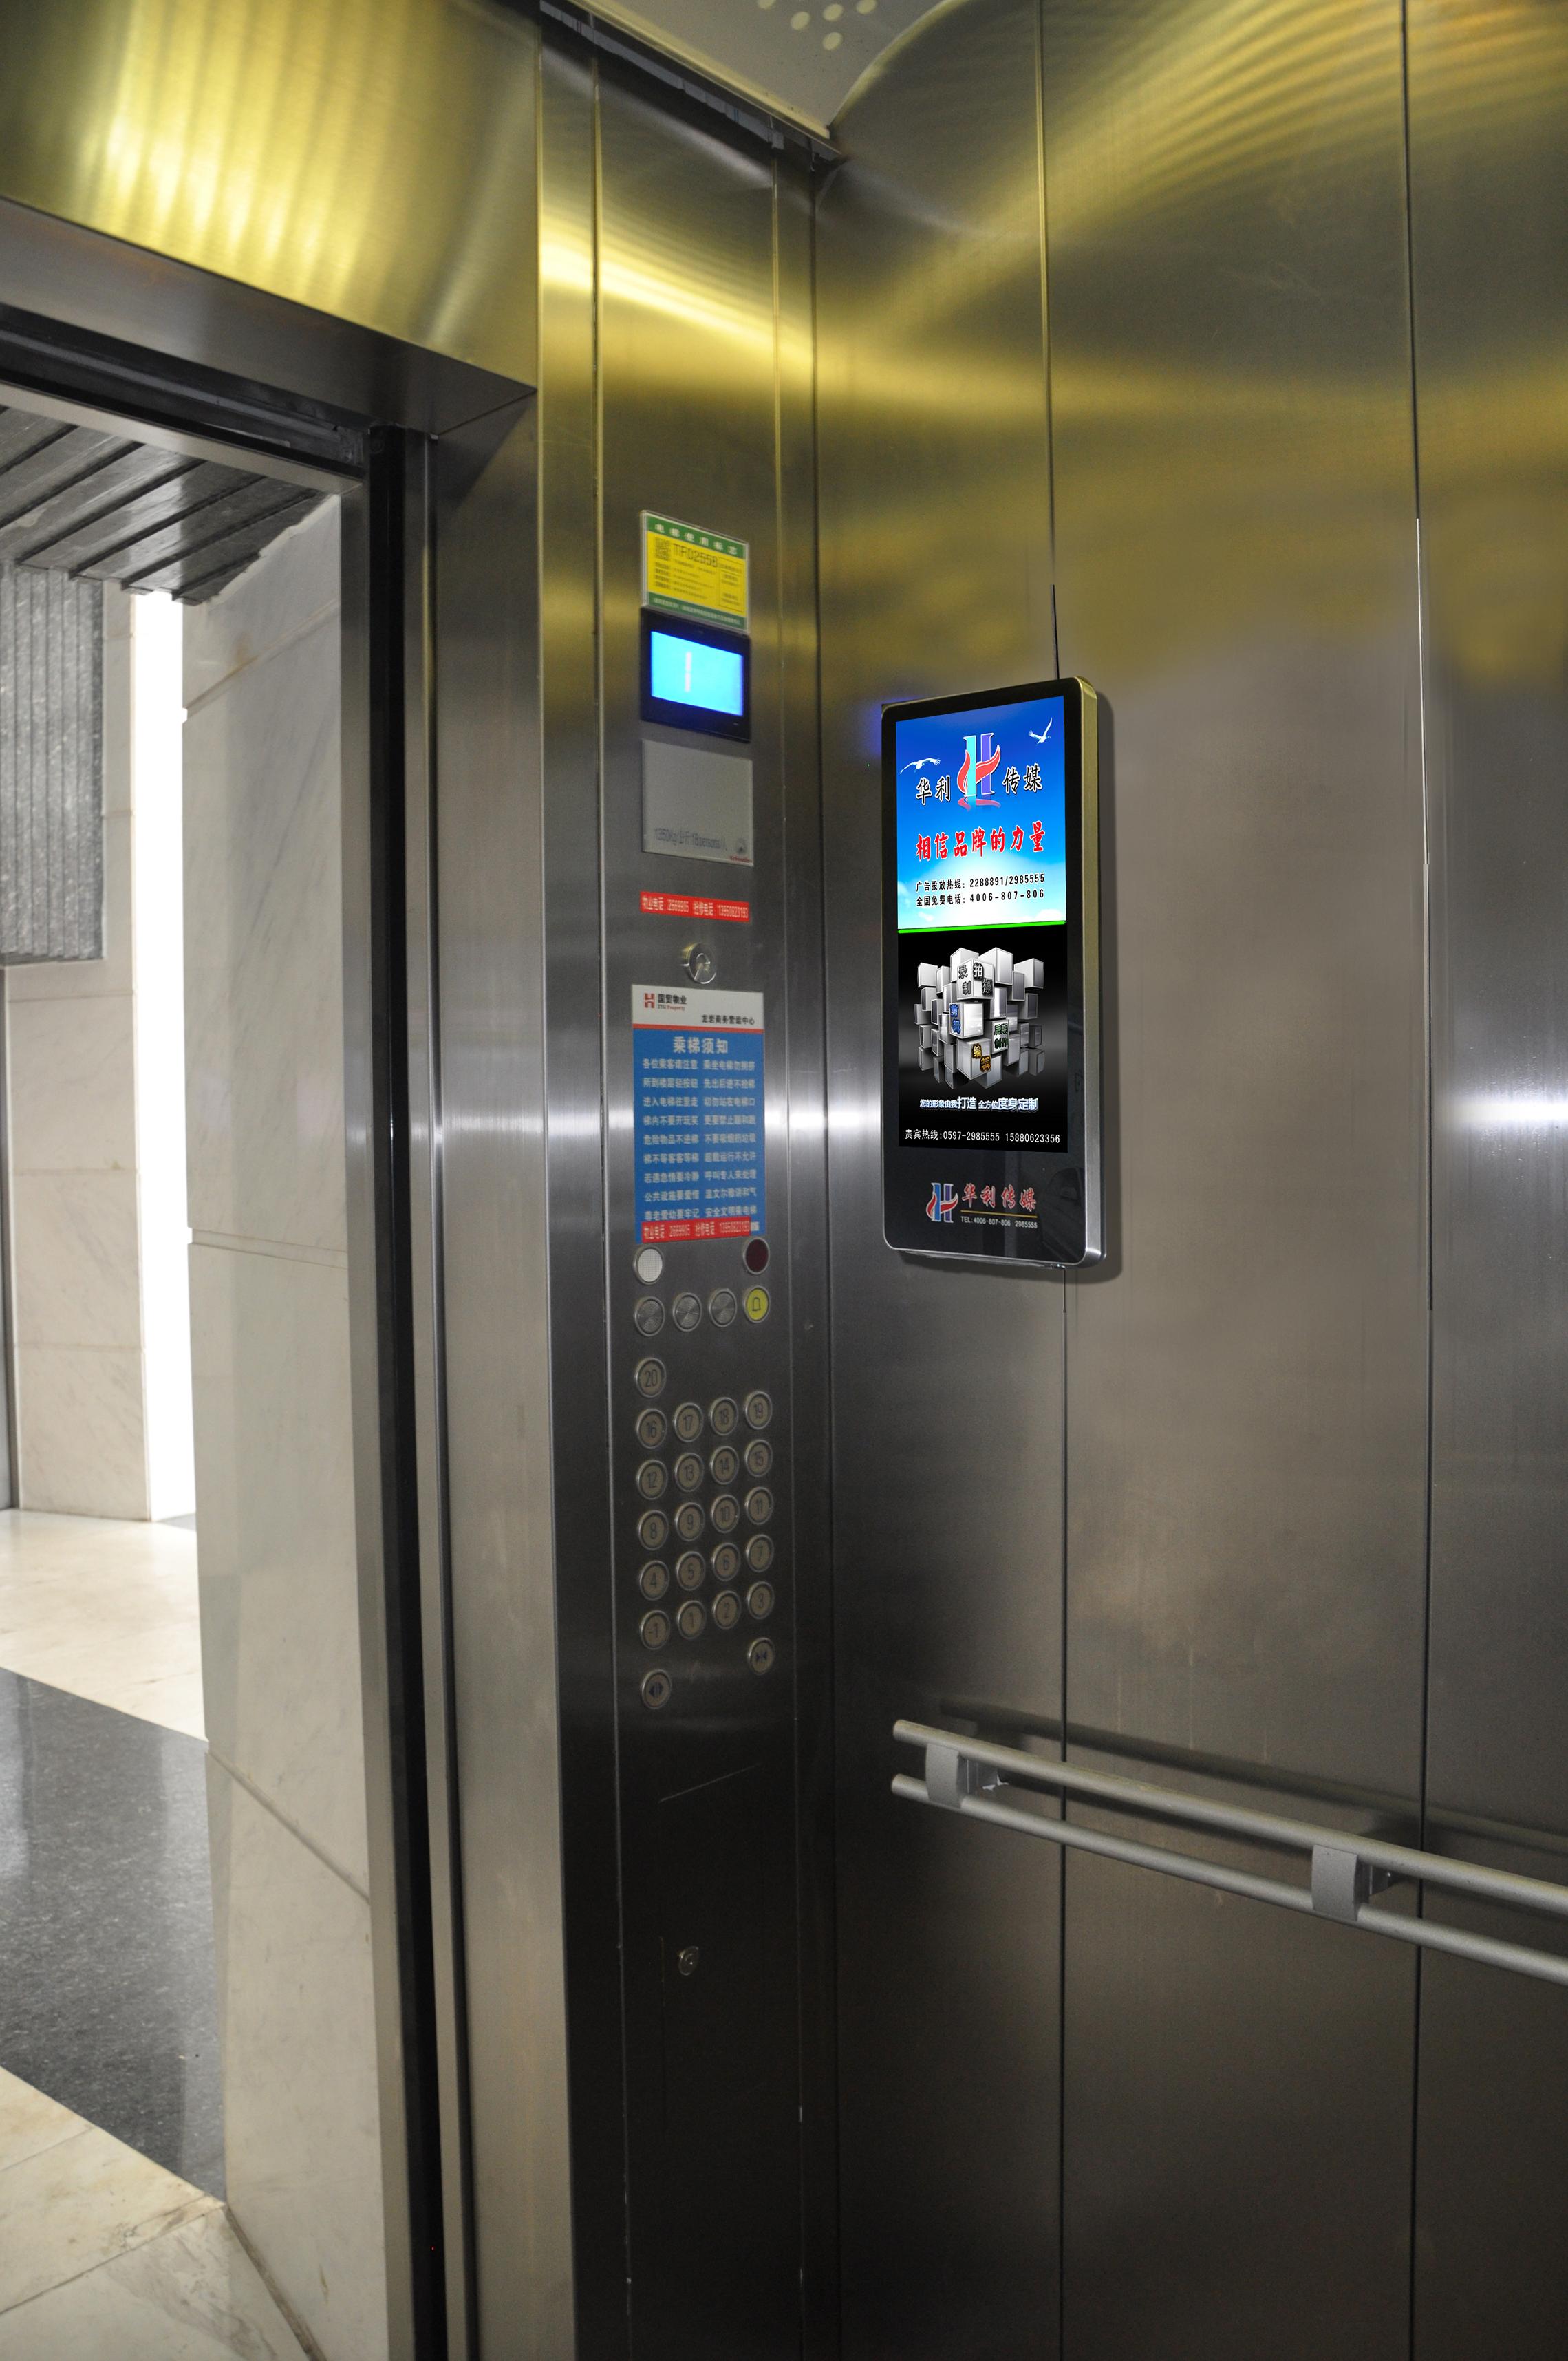 与电梯外安装的电视遥相呼应,使受众者在电梯门口接收广告信息的同时